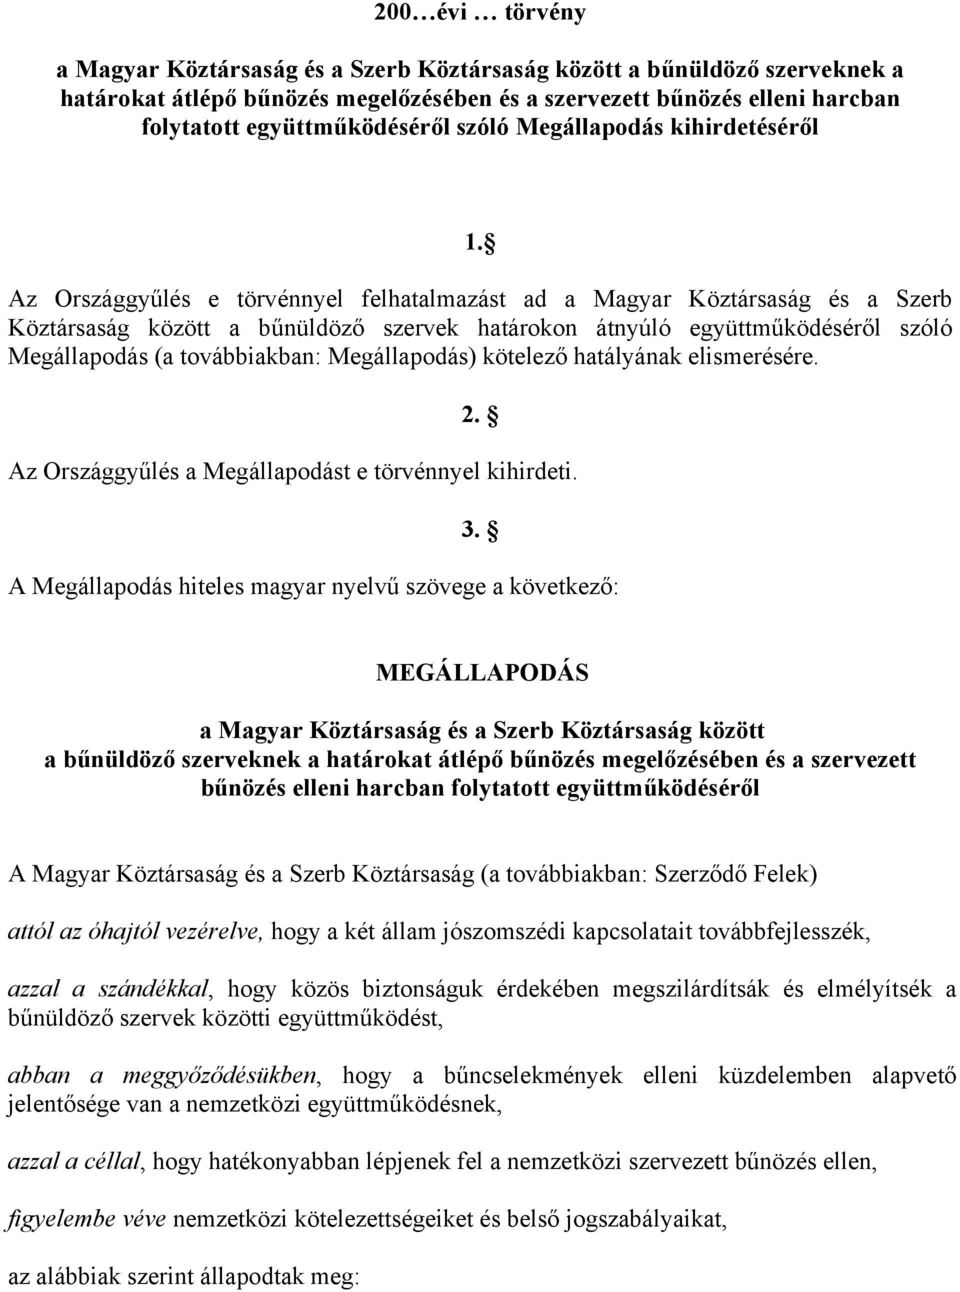 Az Országgyűlés e törvénnyel felhatalmazást ad a Magyar Köztársaság és a Szerb Köztársaság között a bűnüldöző szervek határokon átnyúló együttműködéséről szóló Megállapodás (a továbbiakban: